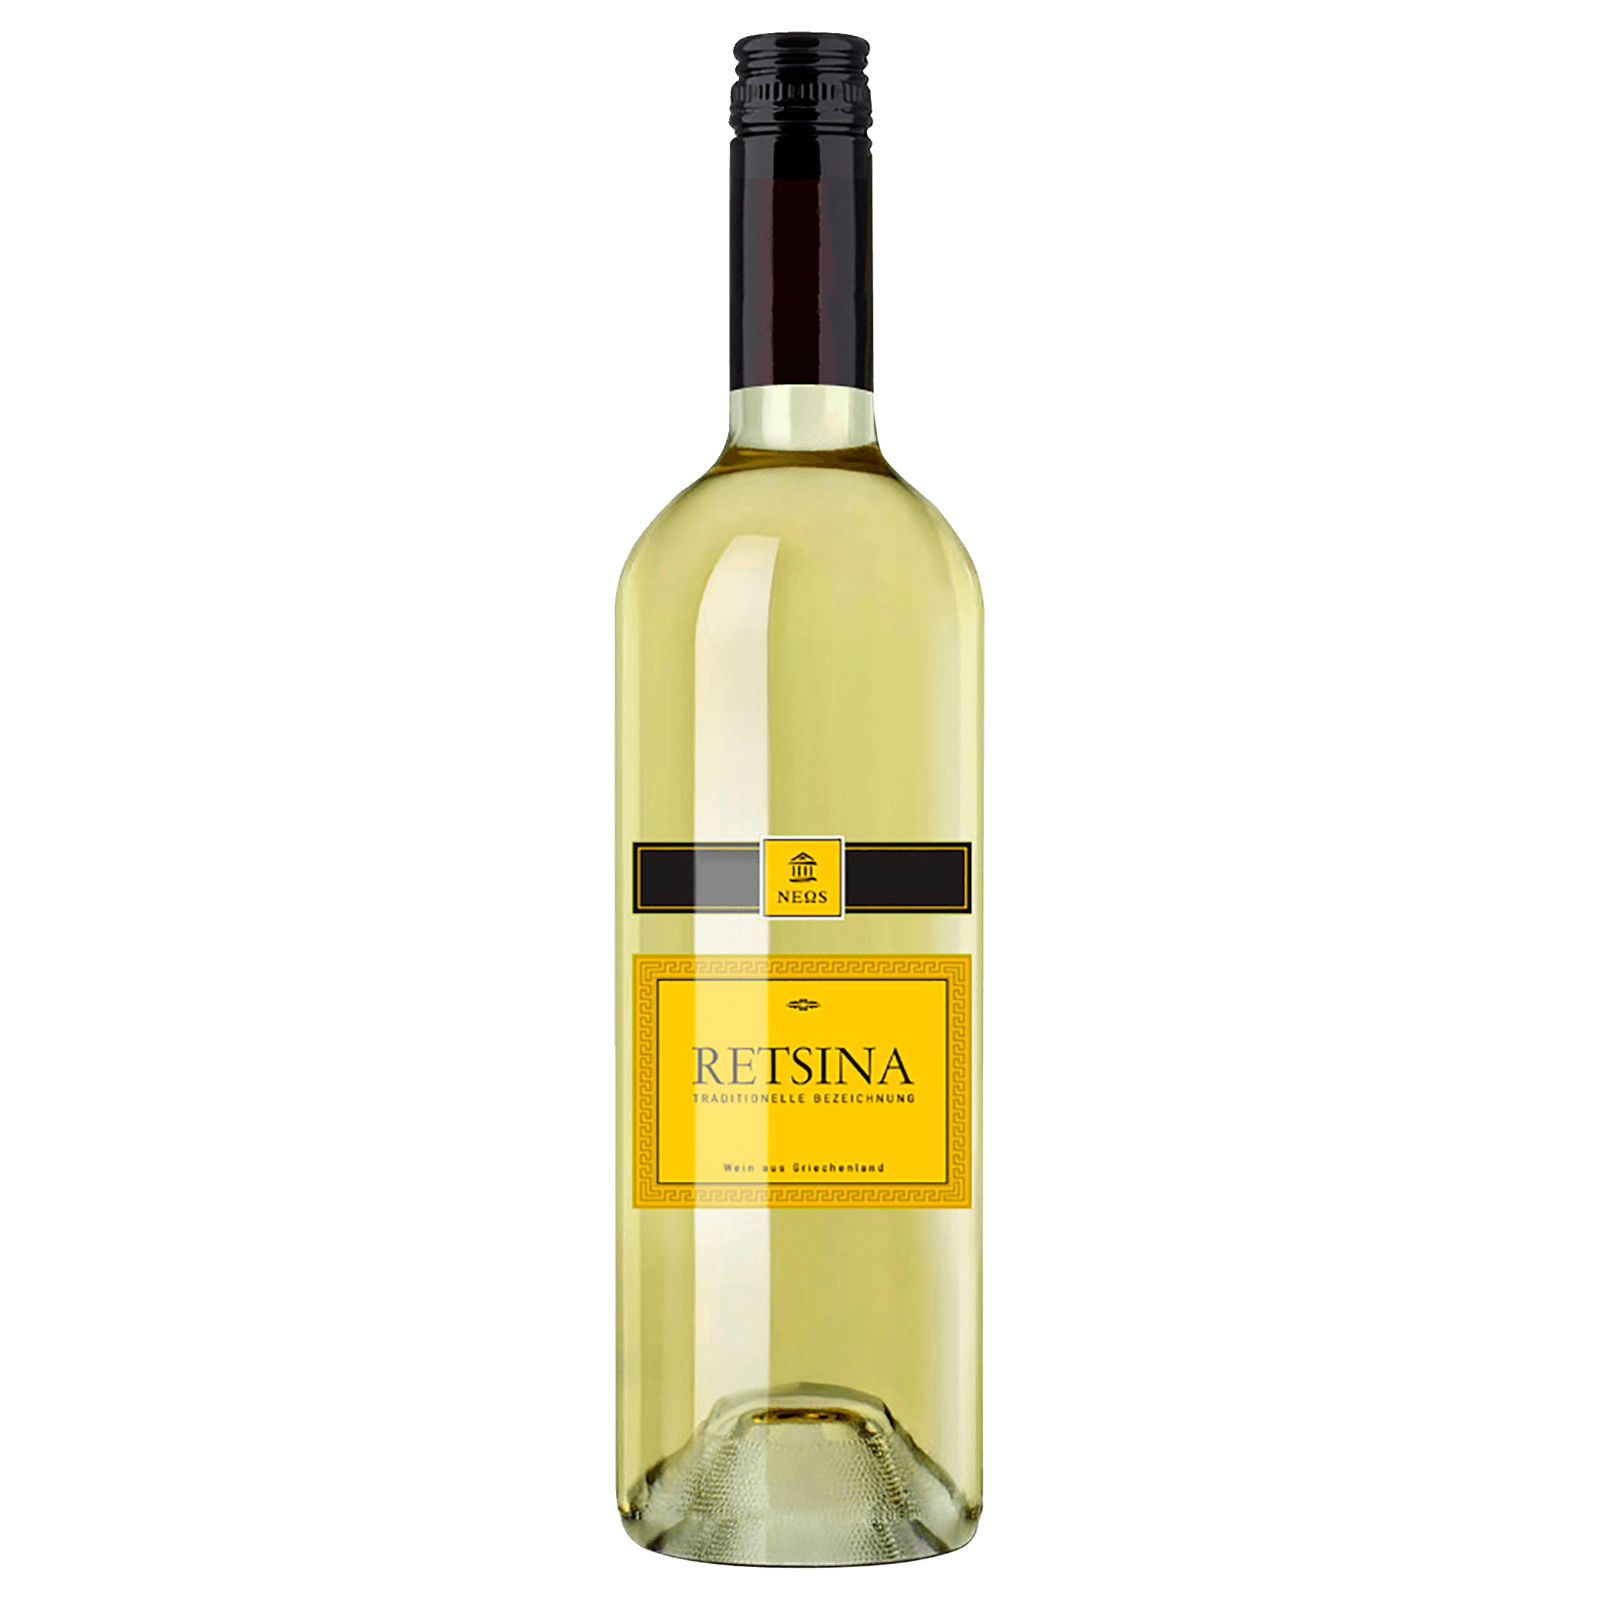 Neos Weißwein Retsina trocken 0,75l bei REWE online bestellen!